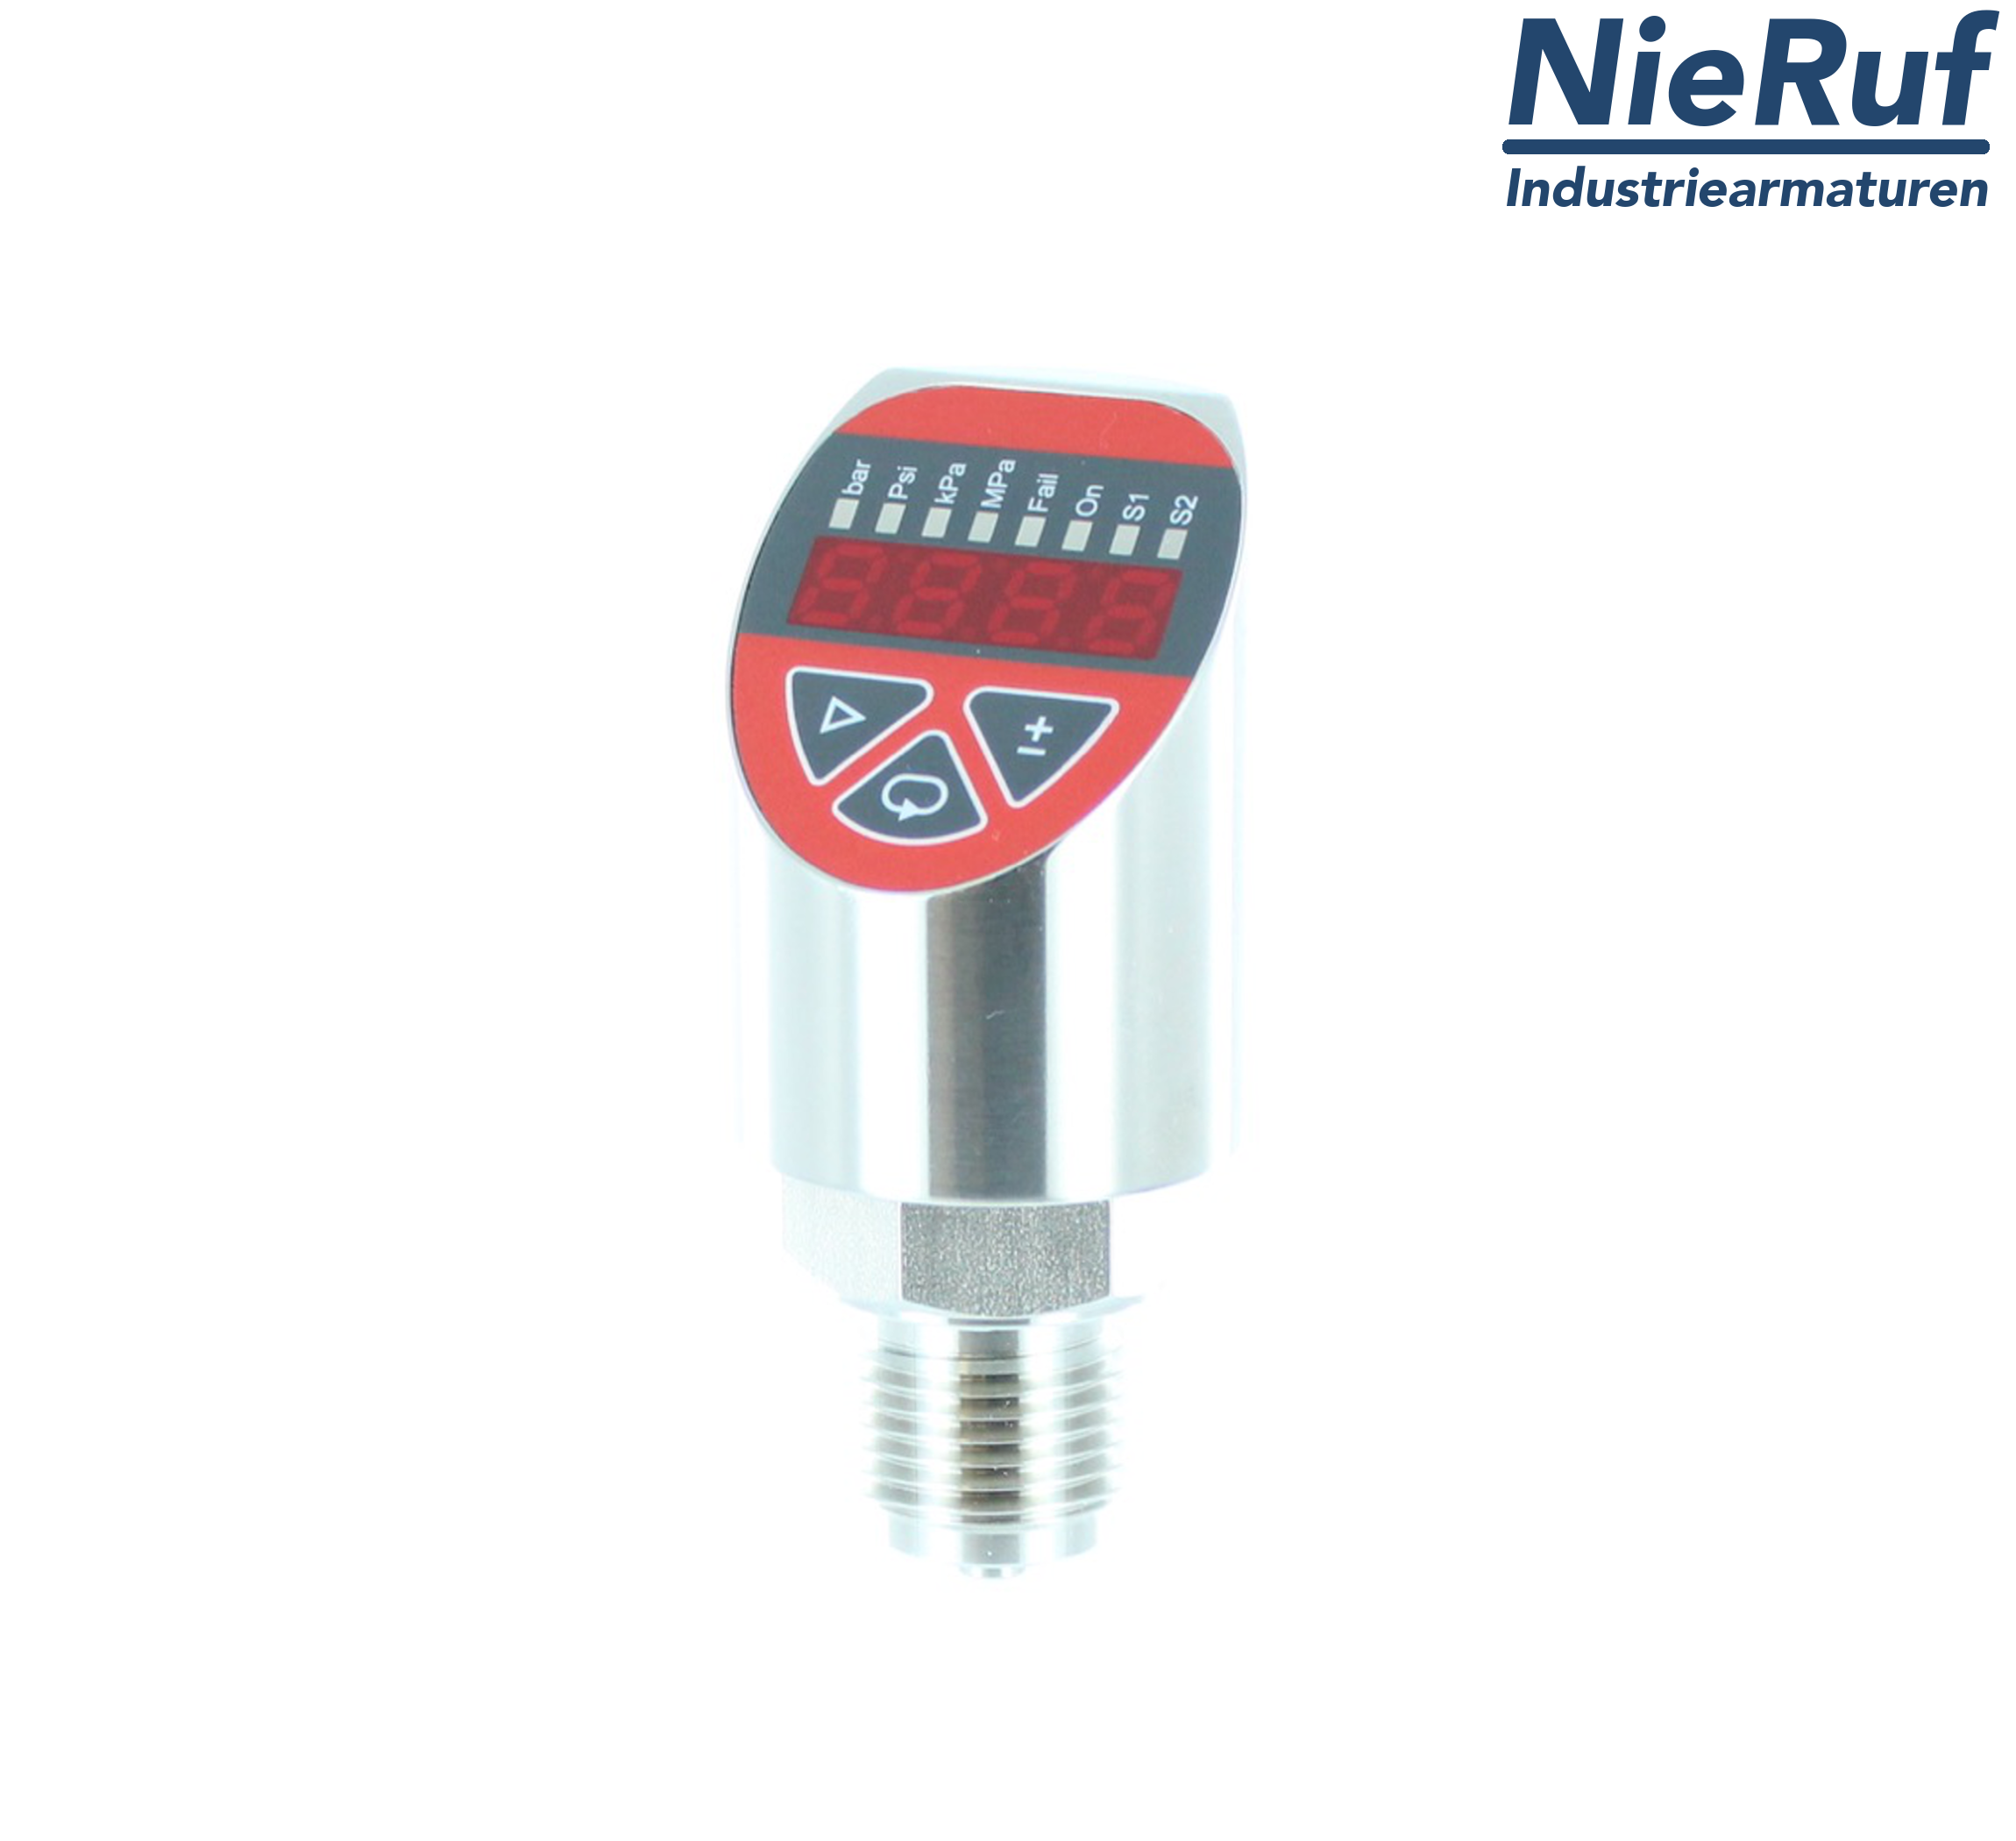 digital pressure sensor G 1/2" B IB 4-wire: 1xPNP, 1x4 - 20mA, Desina FPM 0,0 - 1,0 bar